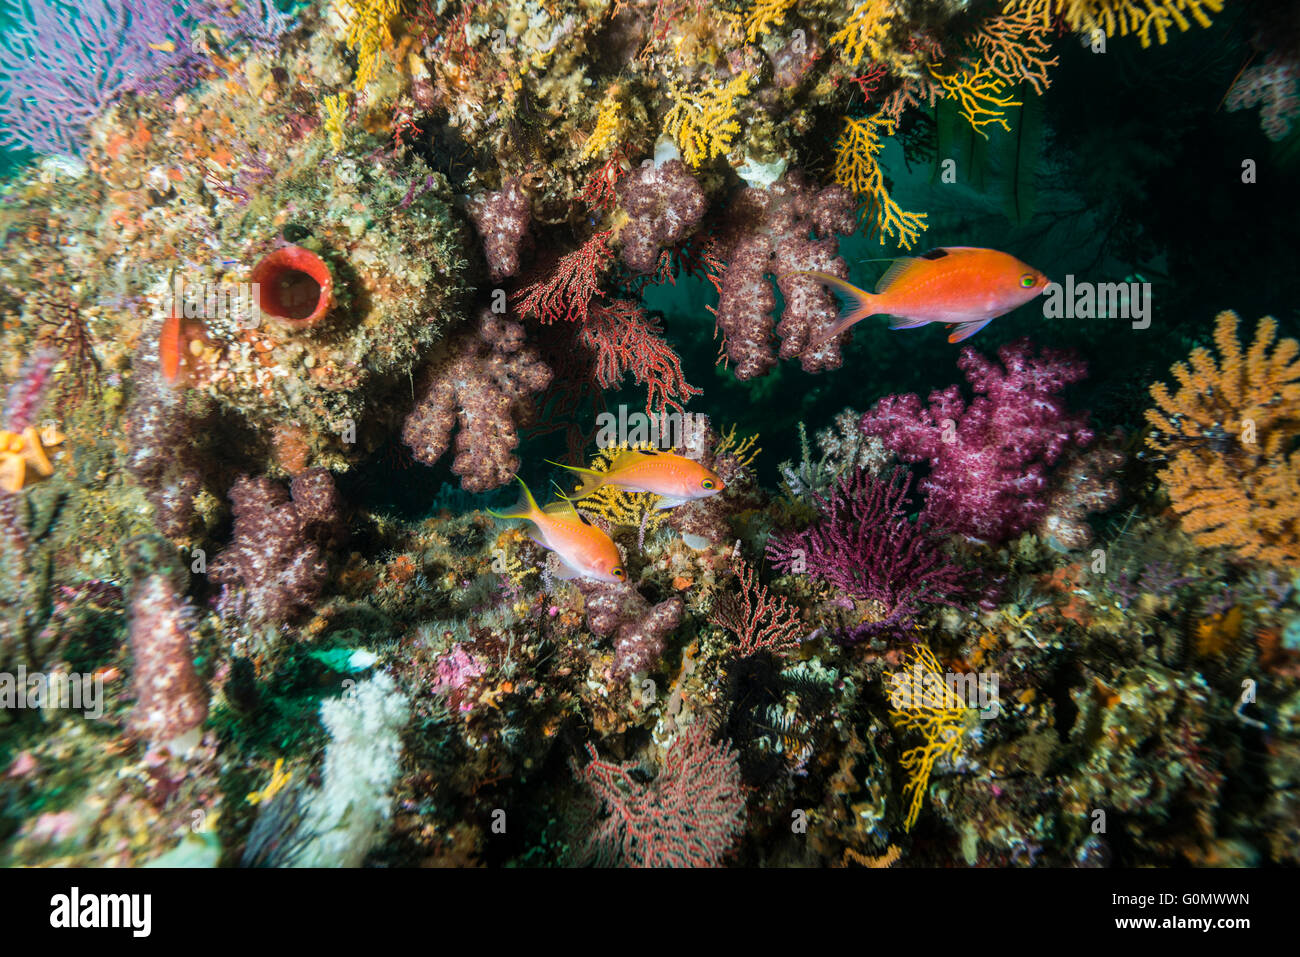 Cherry basse. Nom scientifique : Sacura margaritacea. Piscine à poisson artificiel reef. Owase, Mie, Japon. 20m de profondeur Banque D'Images